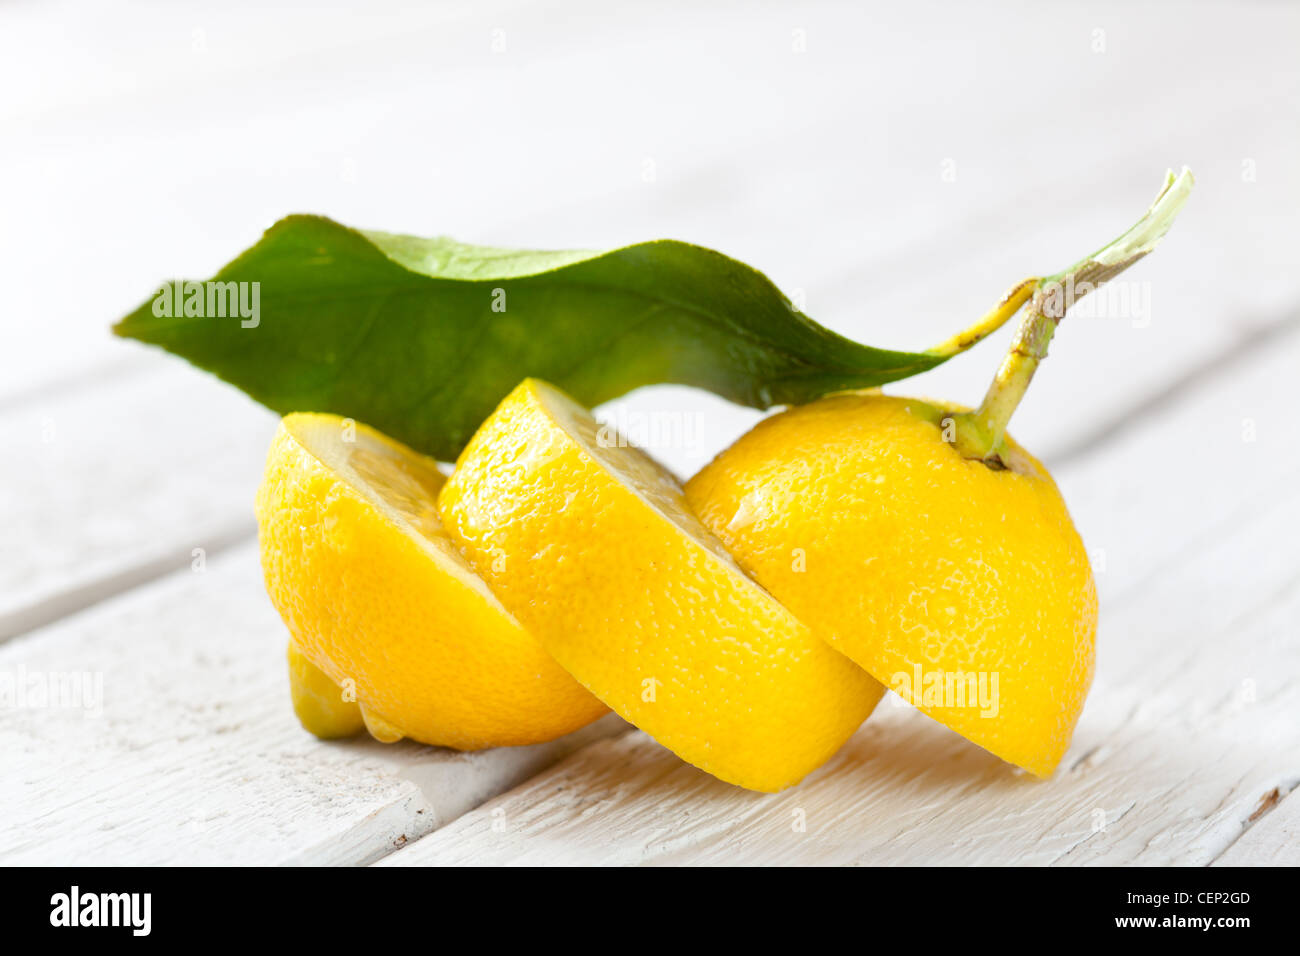 Sliced Lemon on White Wood Stock Photo